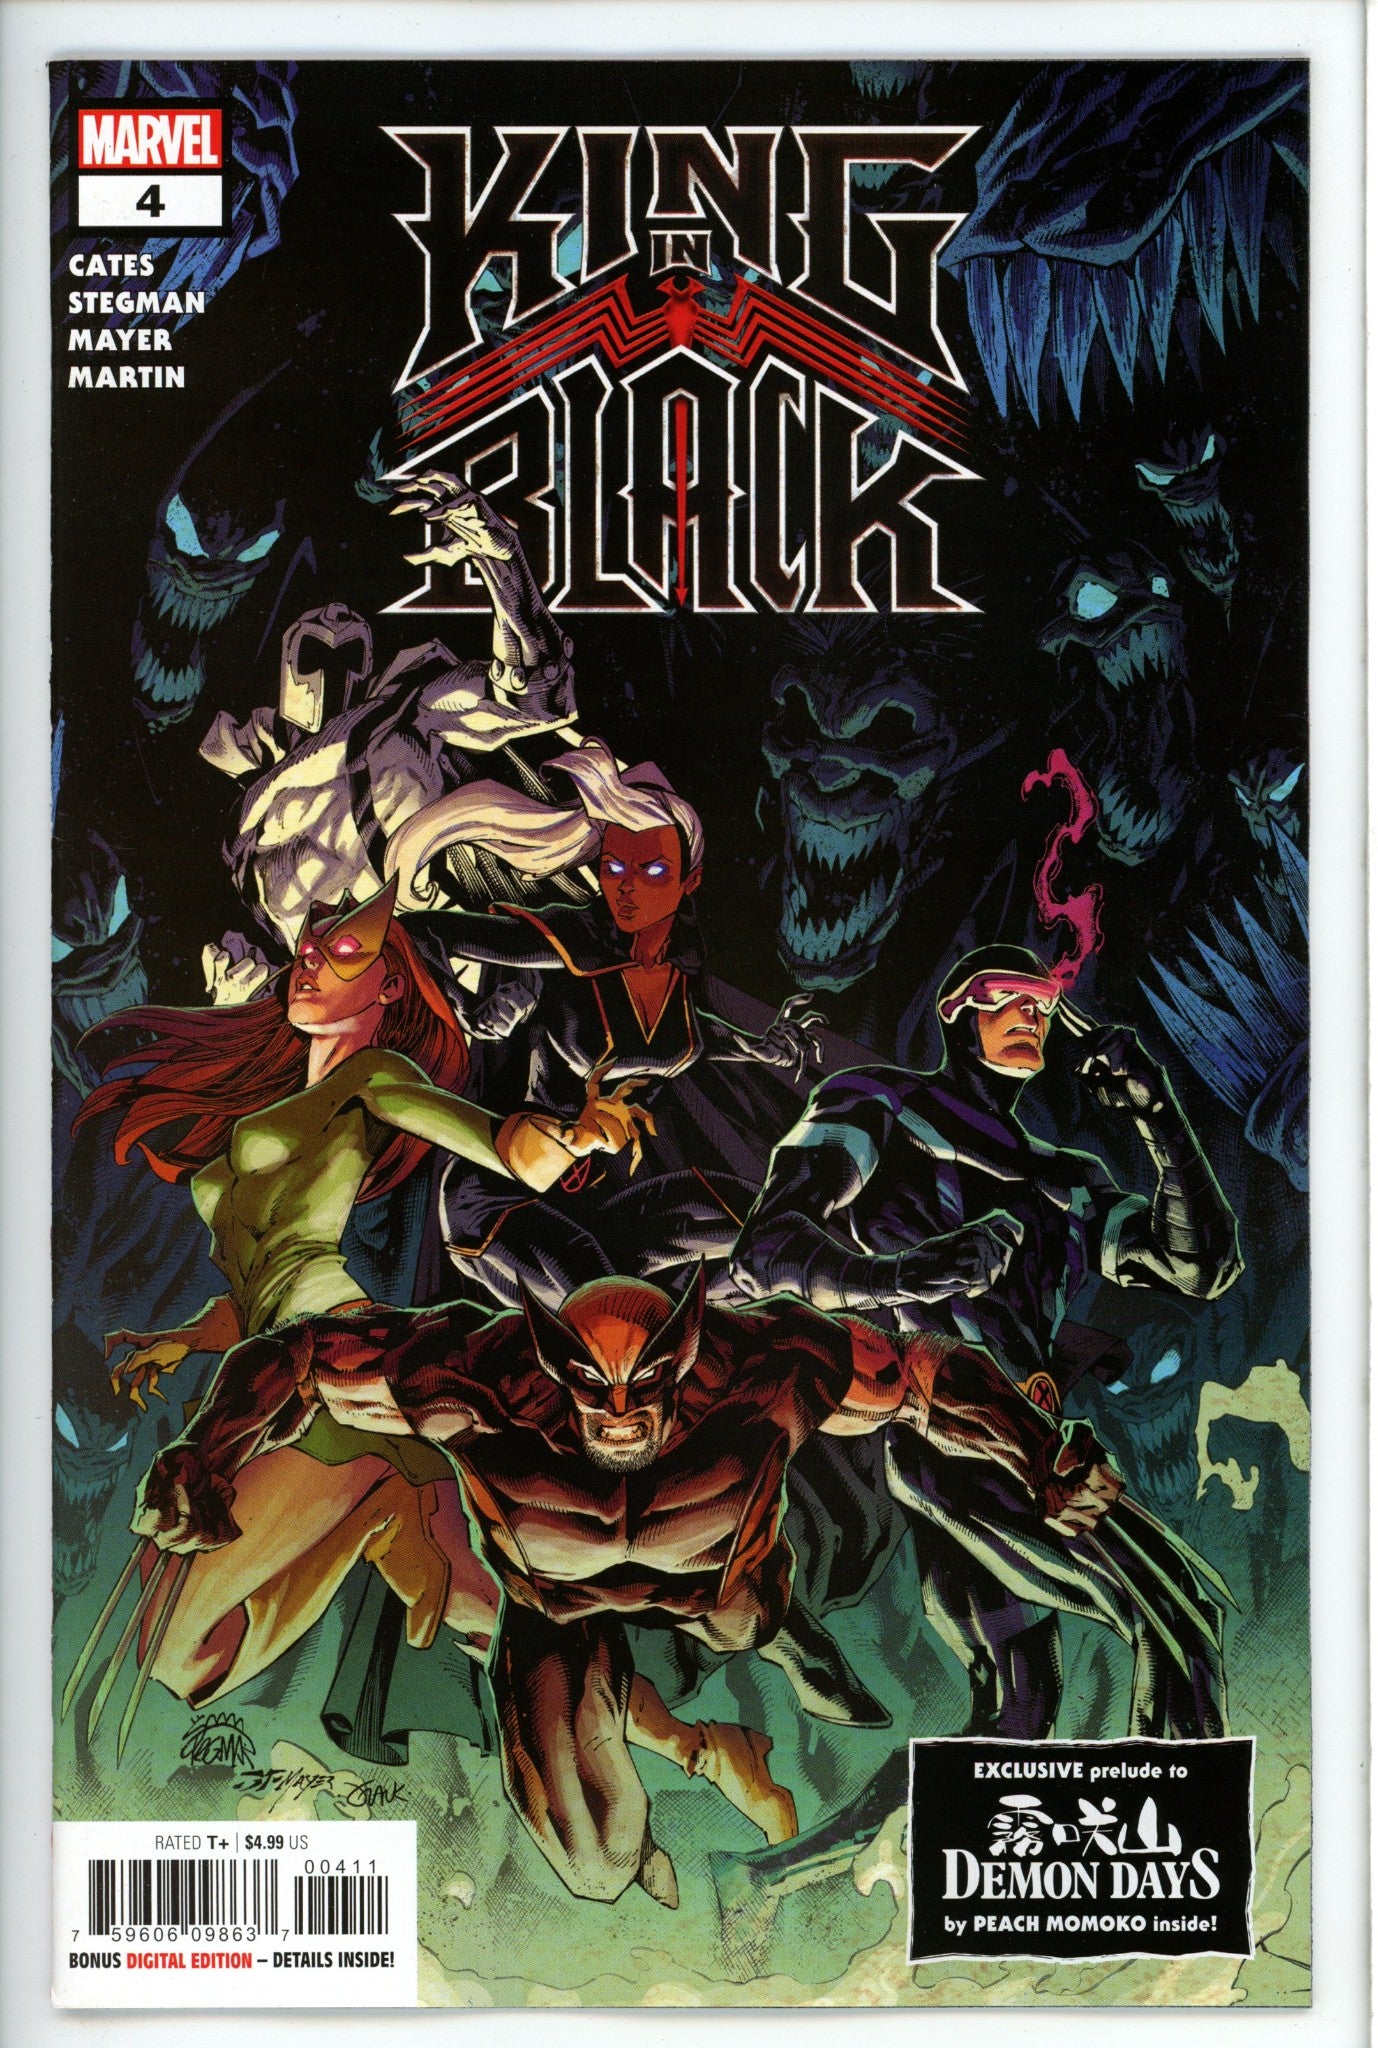 King in Black 4-Marvel-CaptCan Comics Inc